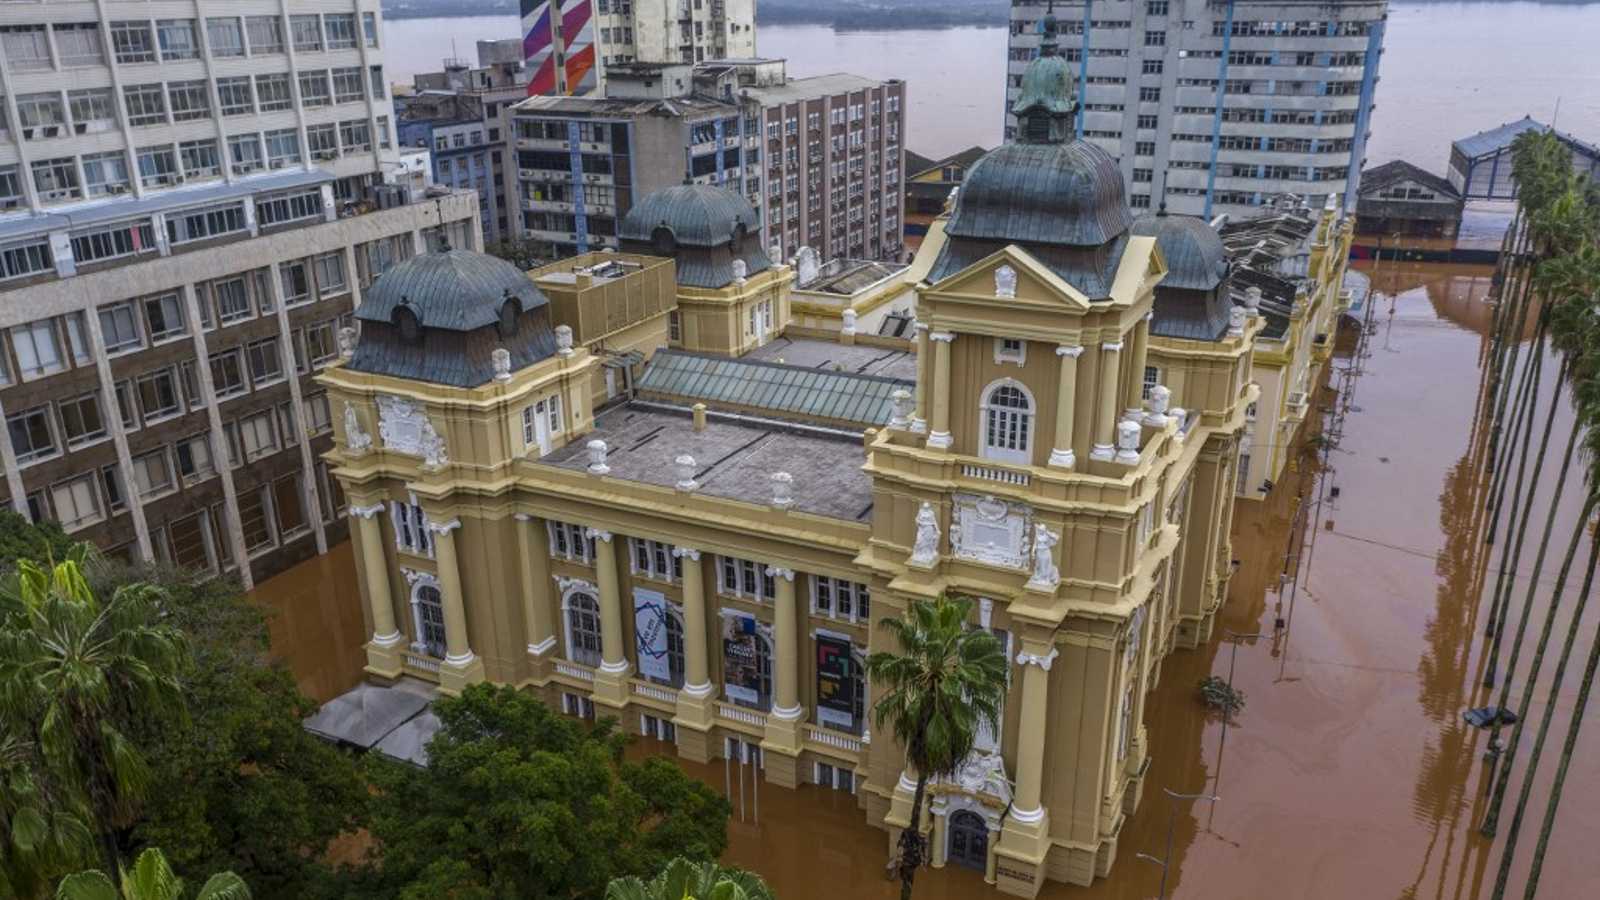 Foto divulgada pela Secretaria de Cultura do RS (Sedac) mostra o Museu de Arte do Rio Grande do Sul (Margs) inundado no centro da cidade